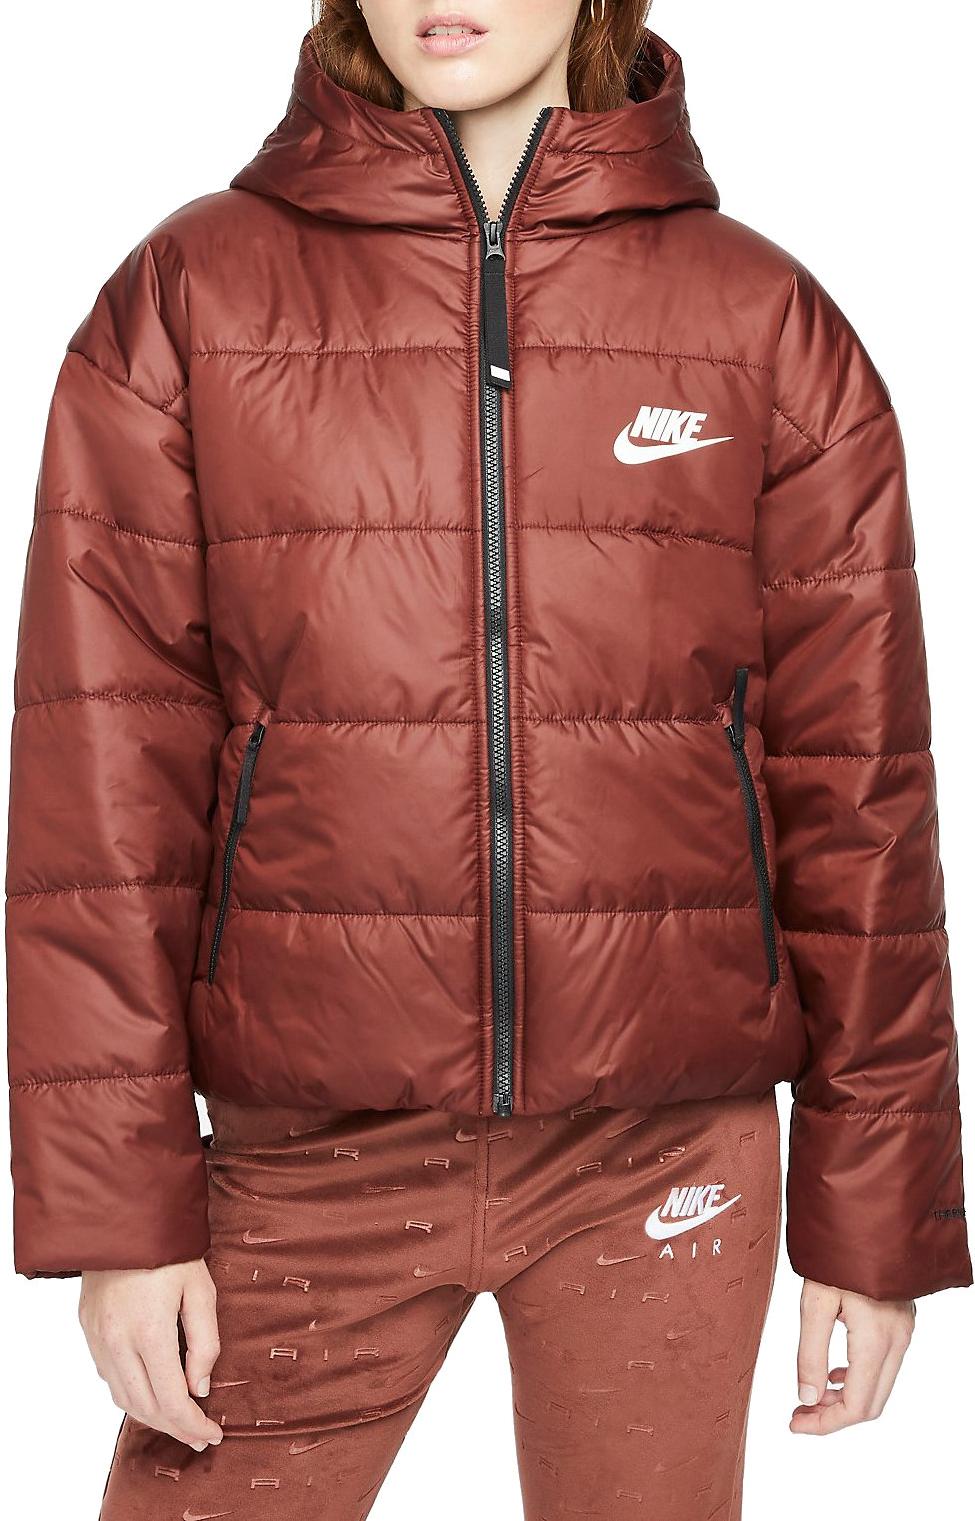 NIKE Women's Nike Sportswear Therma-FIT Repel Long Puffer Jacket